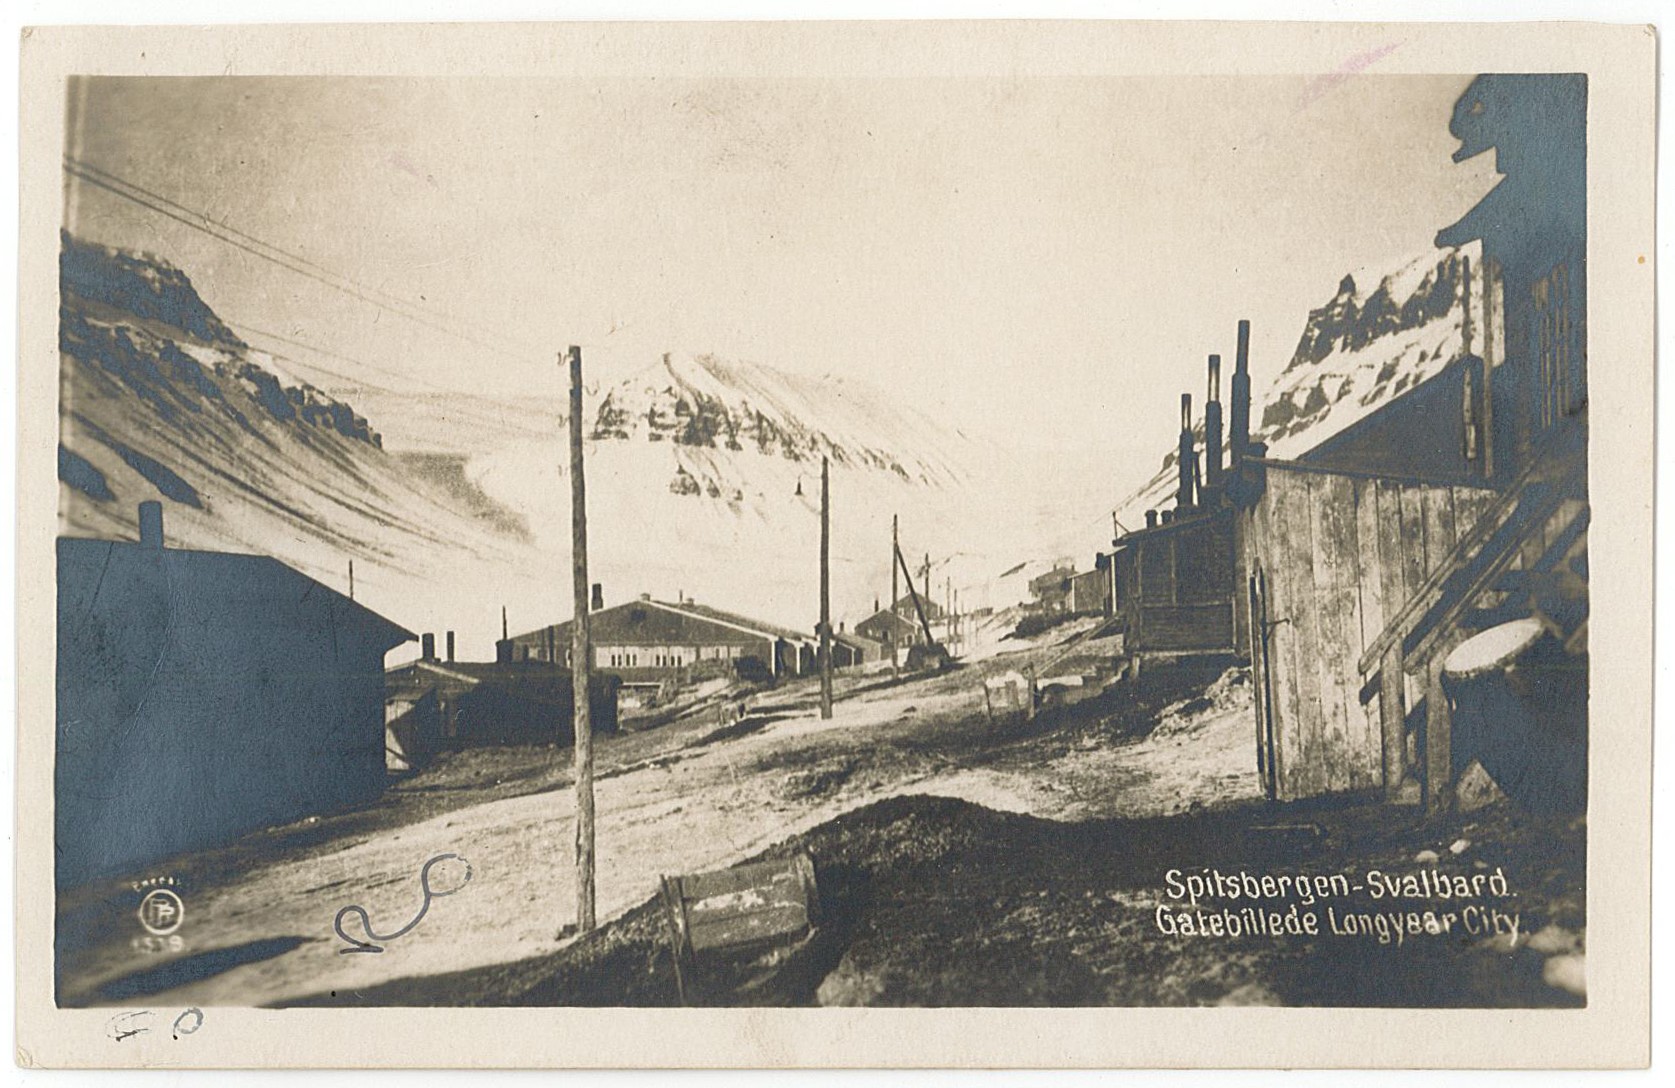 Postkarte von Hermann an Erich Otto, 28.09.1941 (Museum Wolmirstedt RR-F)